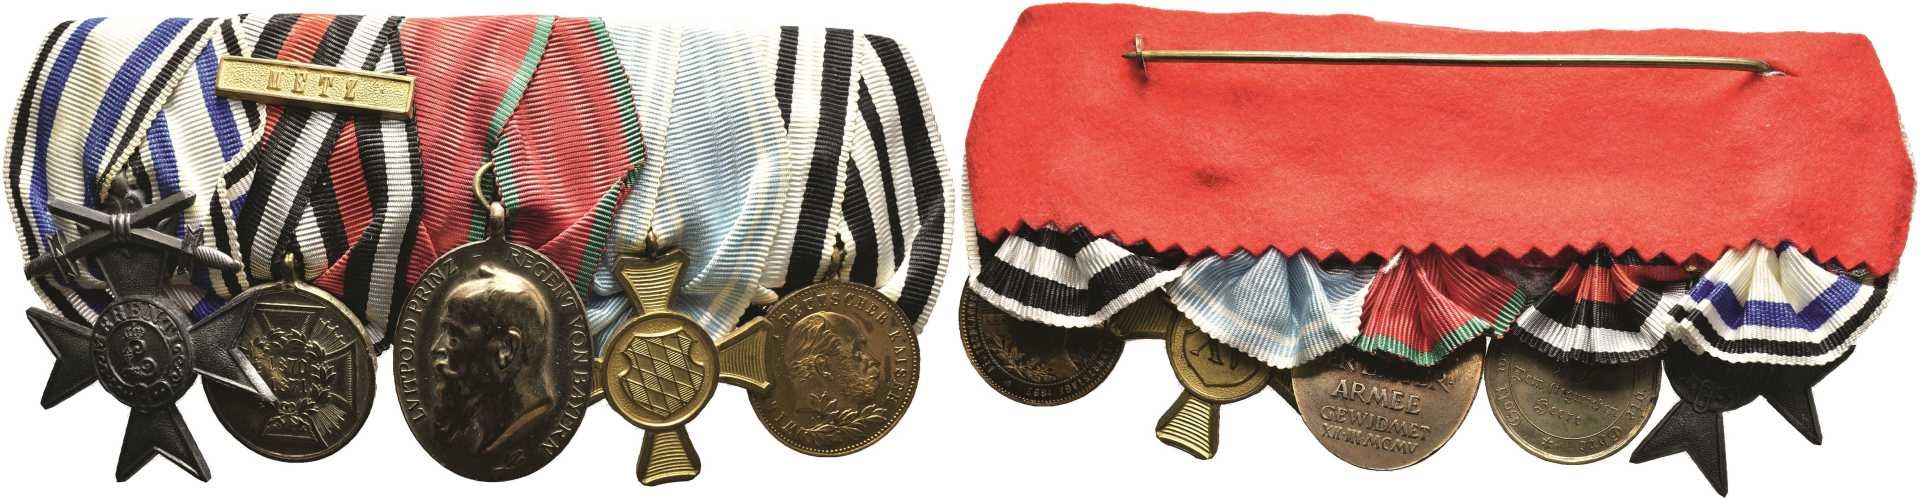 Ordensspange mit 5 Auszeichnungen, dabei Bayern Militär-Verdienstkreuz 3. Form 3. Klasse mit Schwert